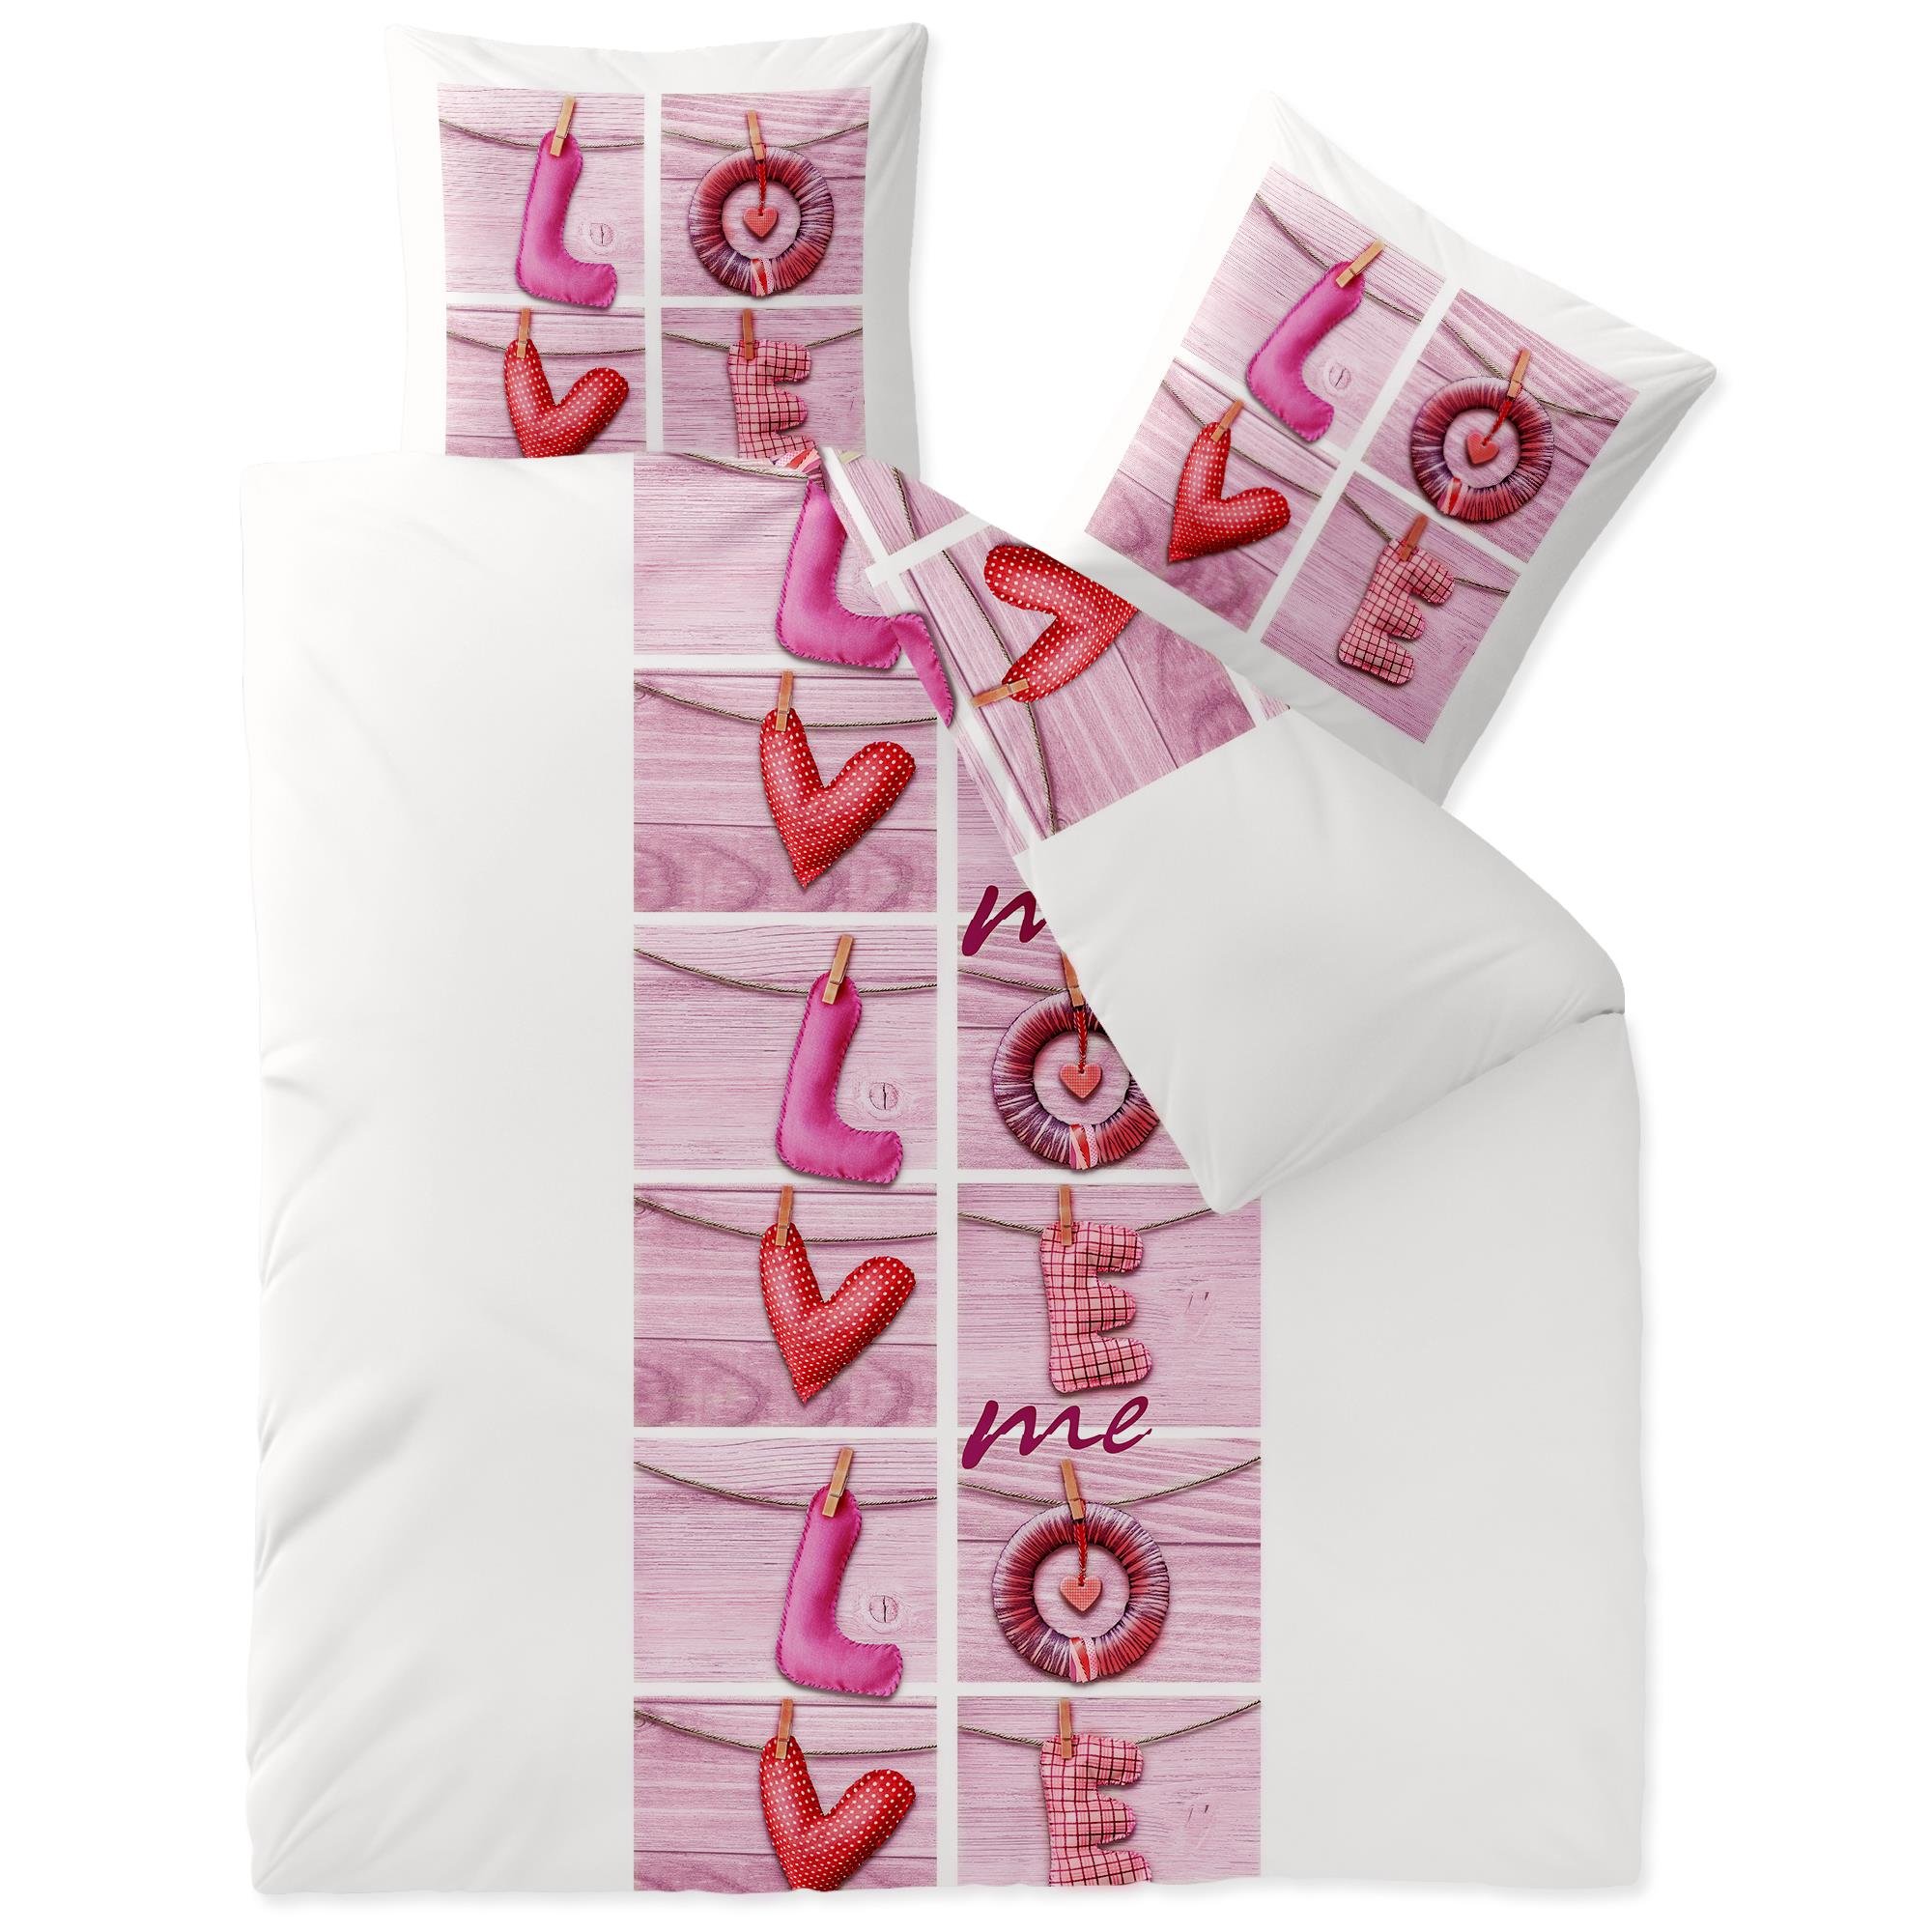 CelinaTex Touchme Biber Bettwäsche 200 x 220 cm 3teilig Baumwolle Bettbezug Loana Love Herz Wörter weiß pink rosa